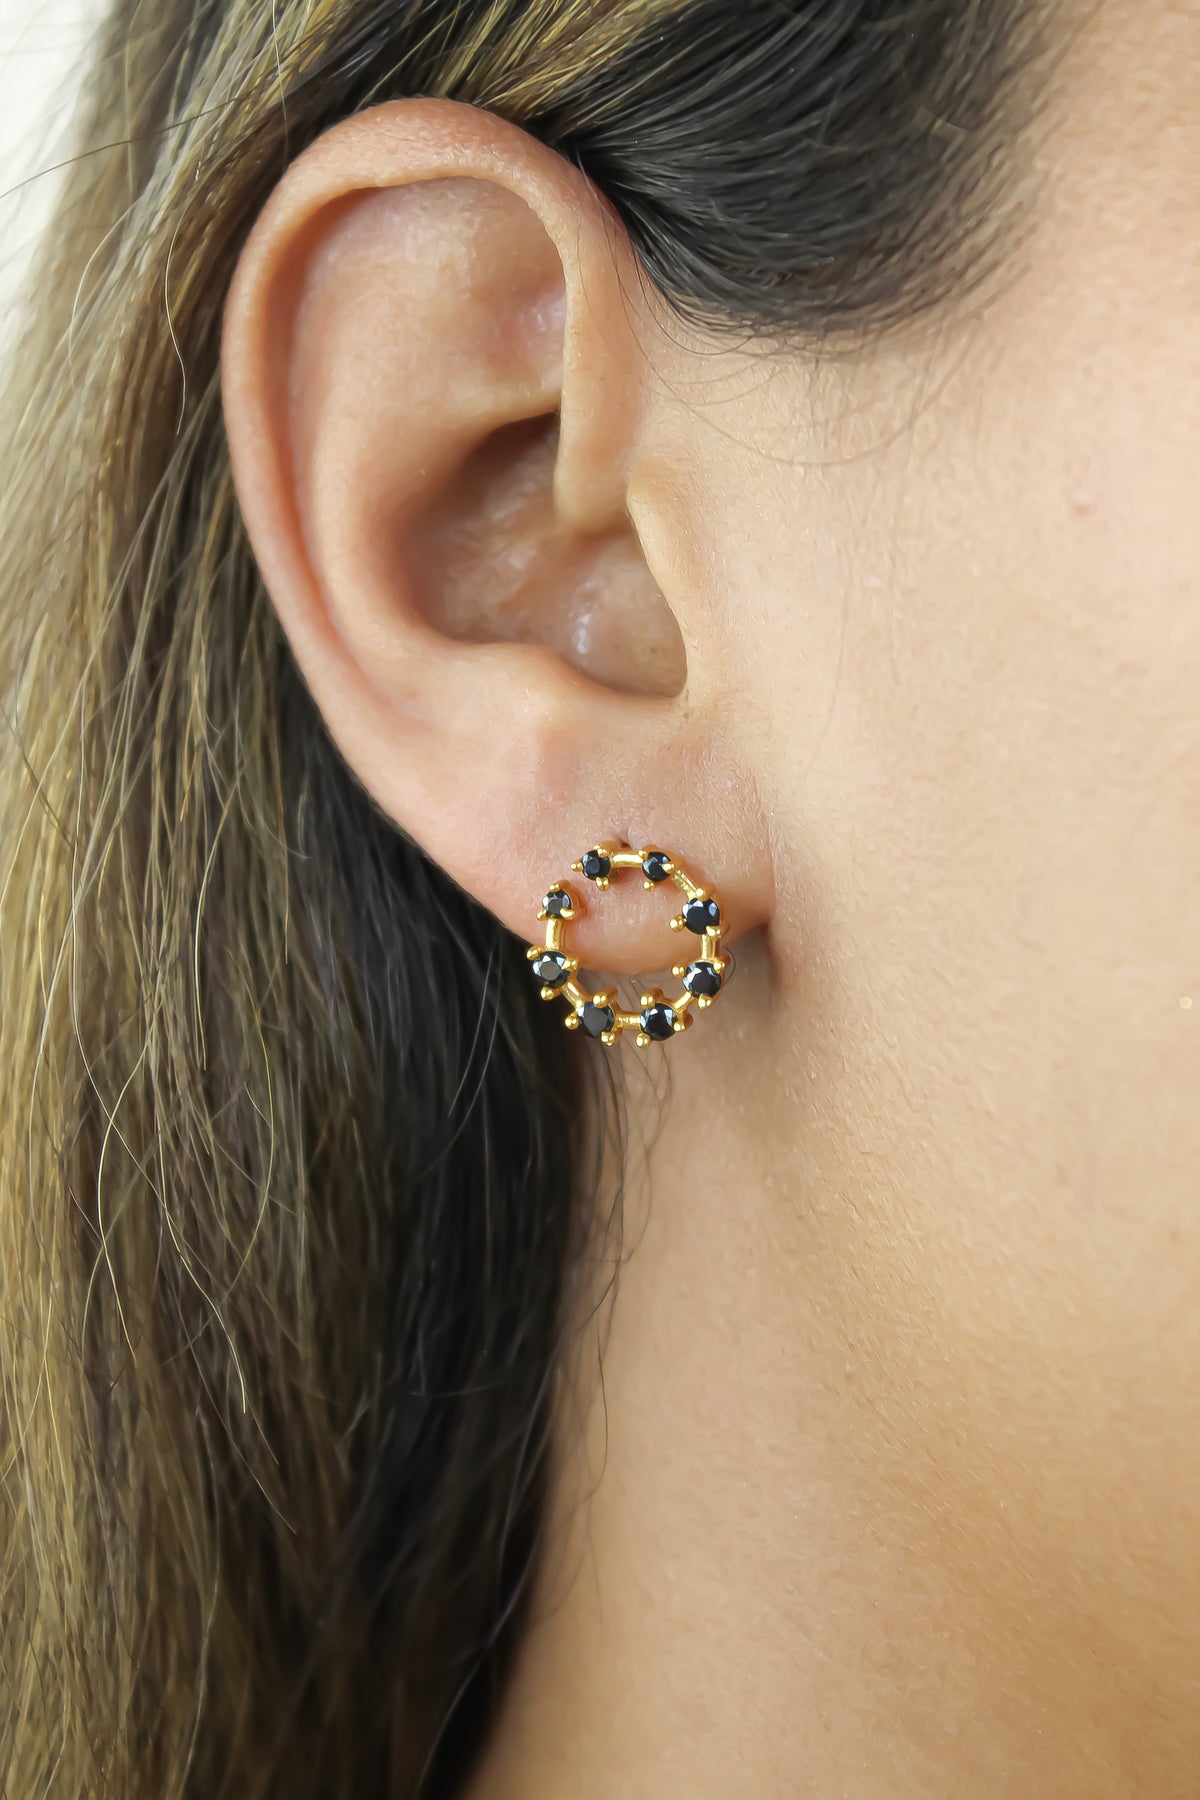 cruise viper earrings Bombay Sunset